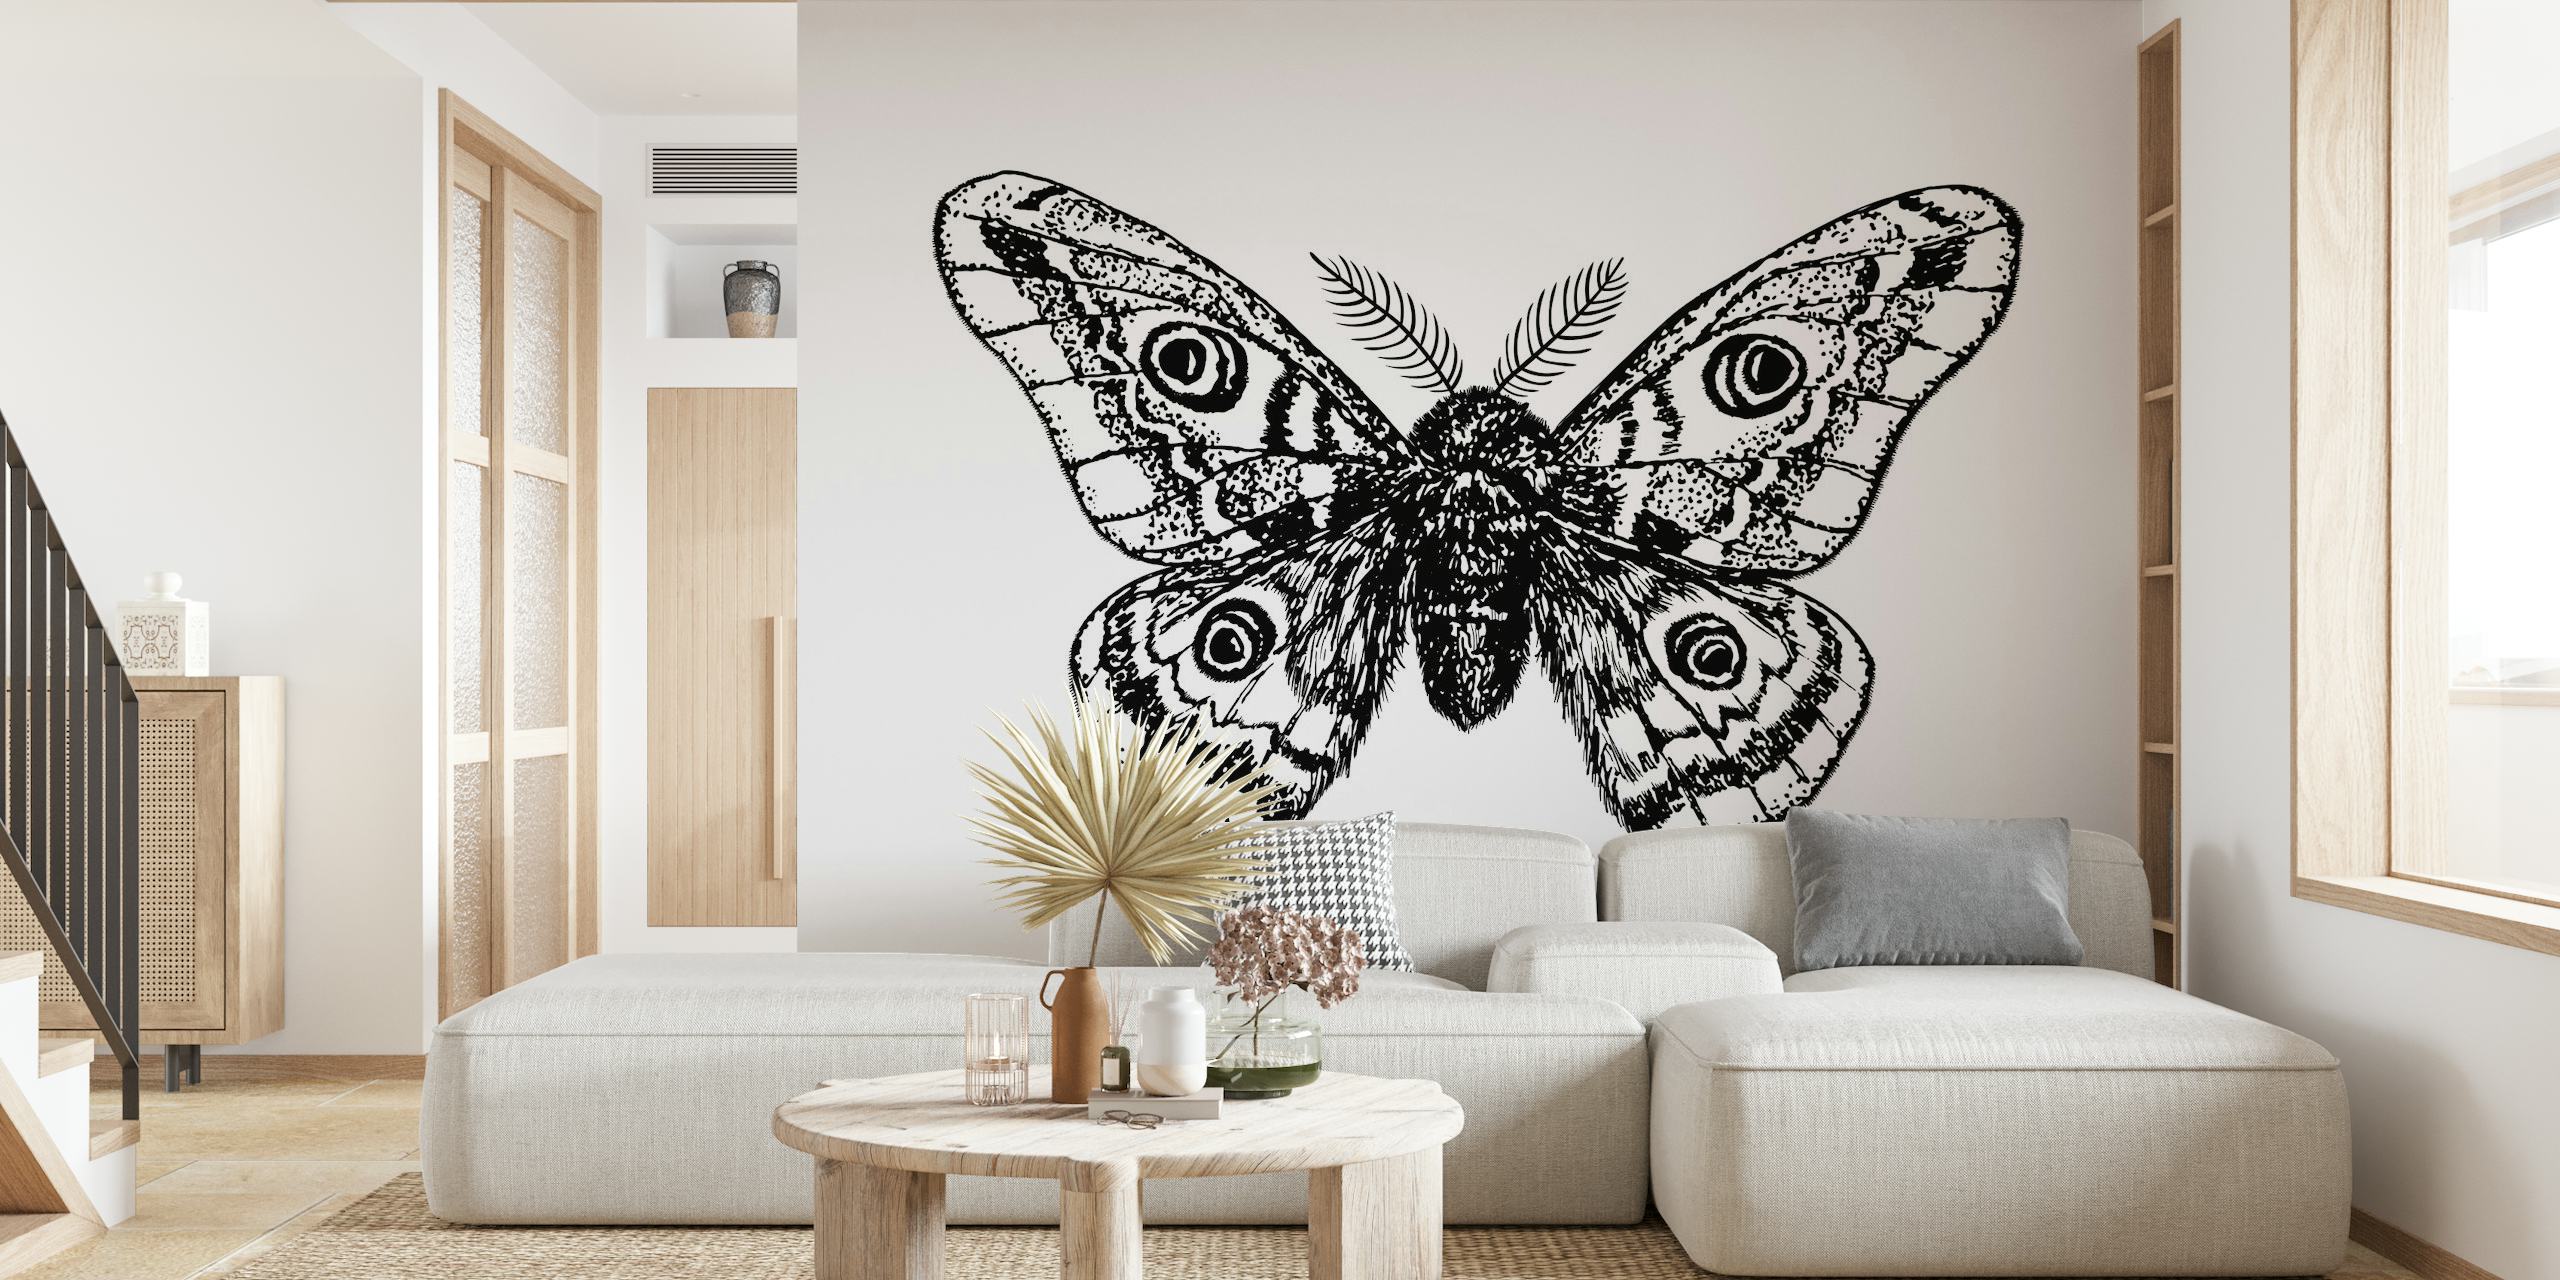 Emperor moth drawing behang